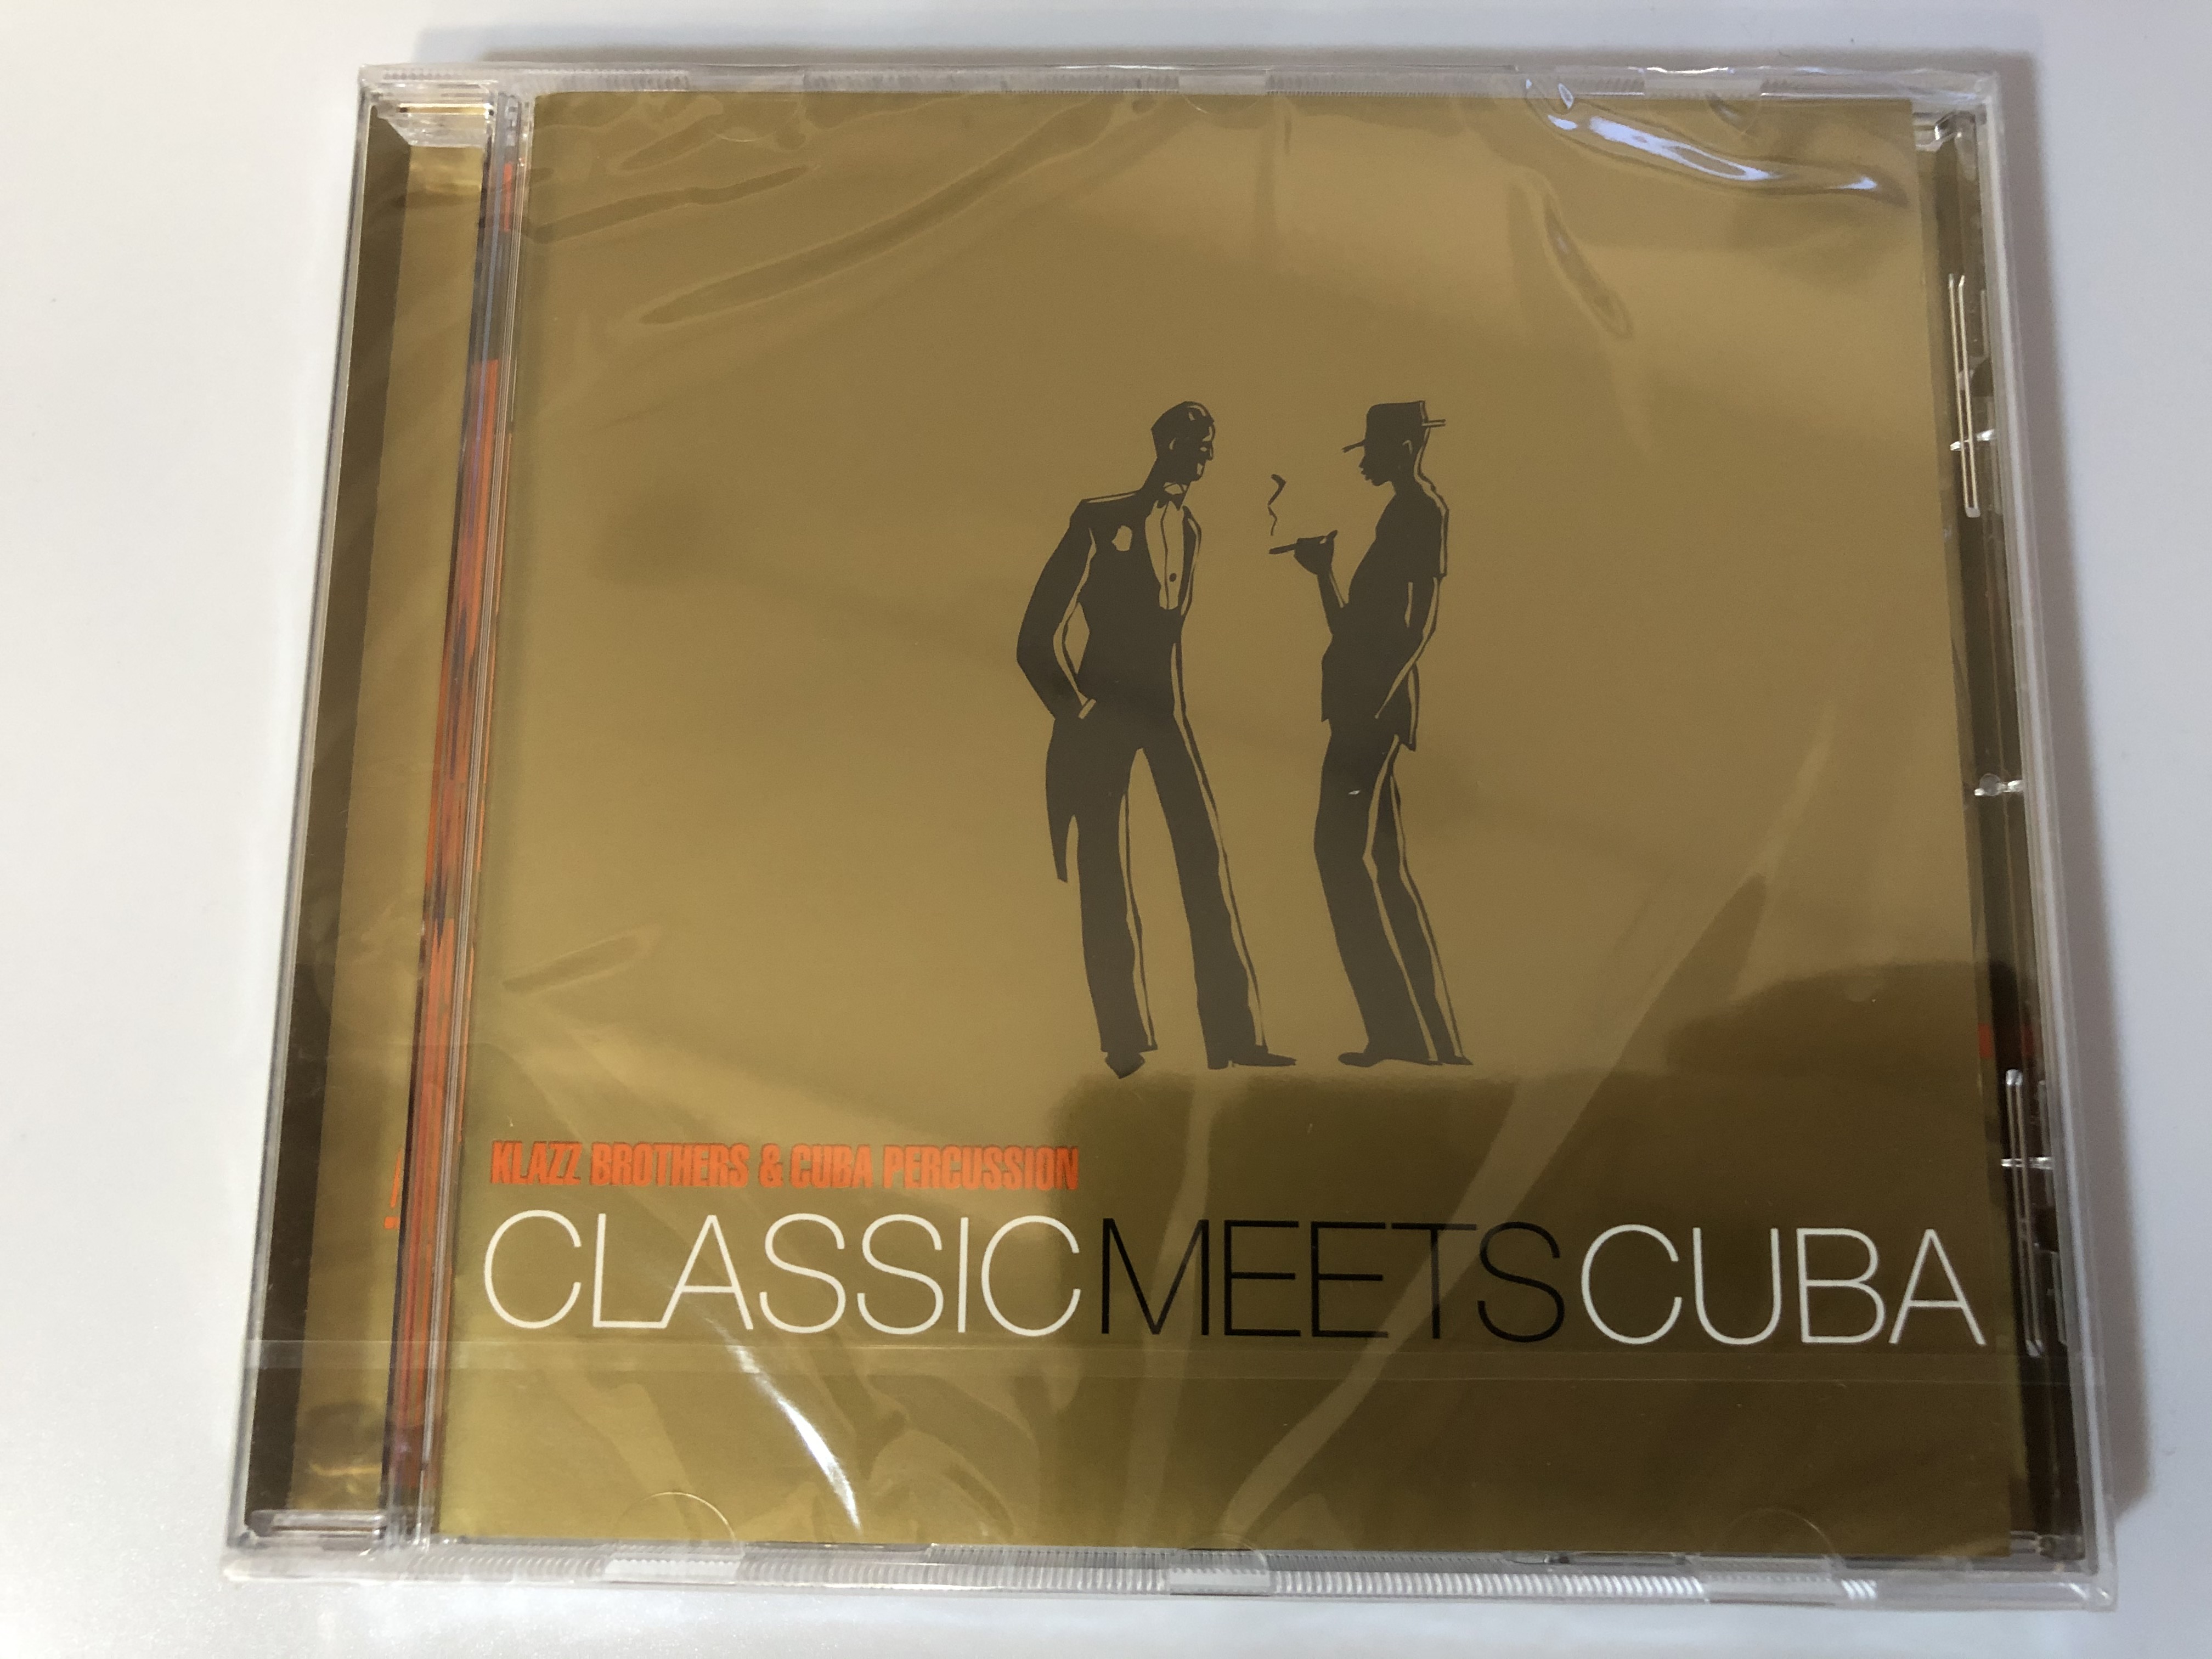 klazz-brothers-cuba-percussion-classic-meets-cuba-sony-classical-audio-cd-2004-sk-93090-1-.jpg